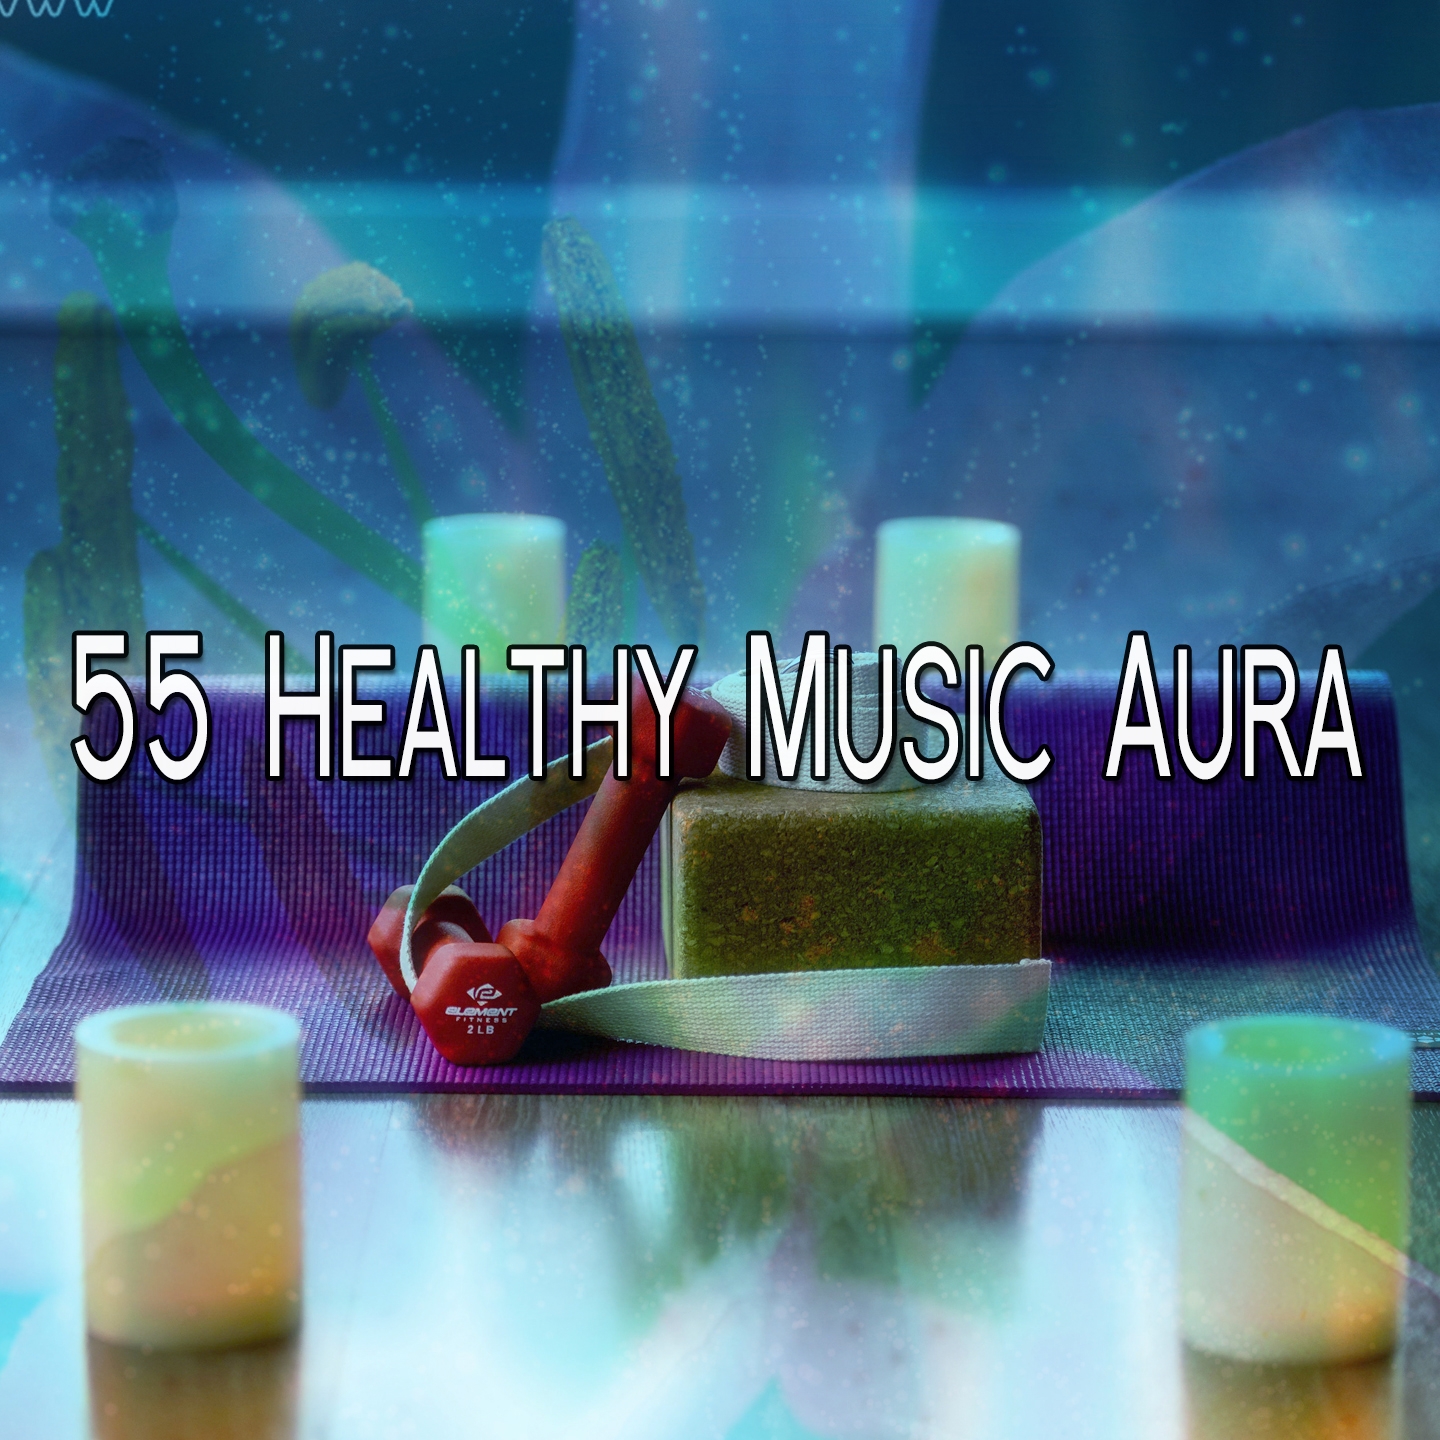 55 Healthy Music Aura